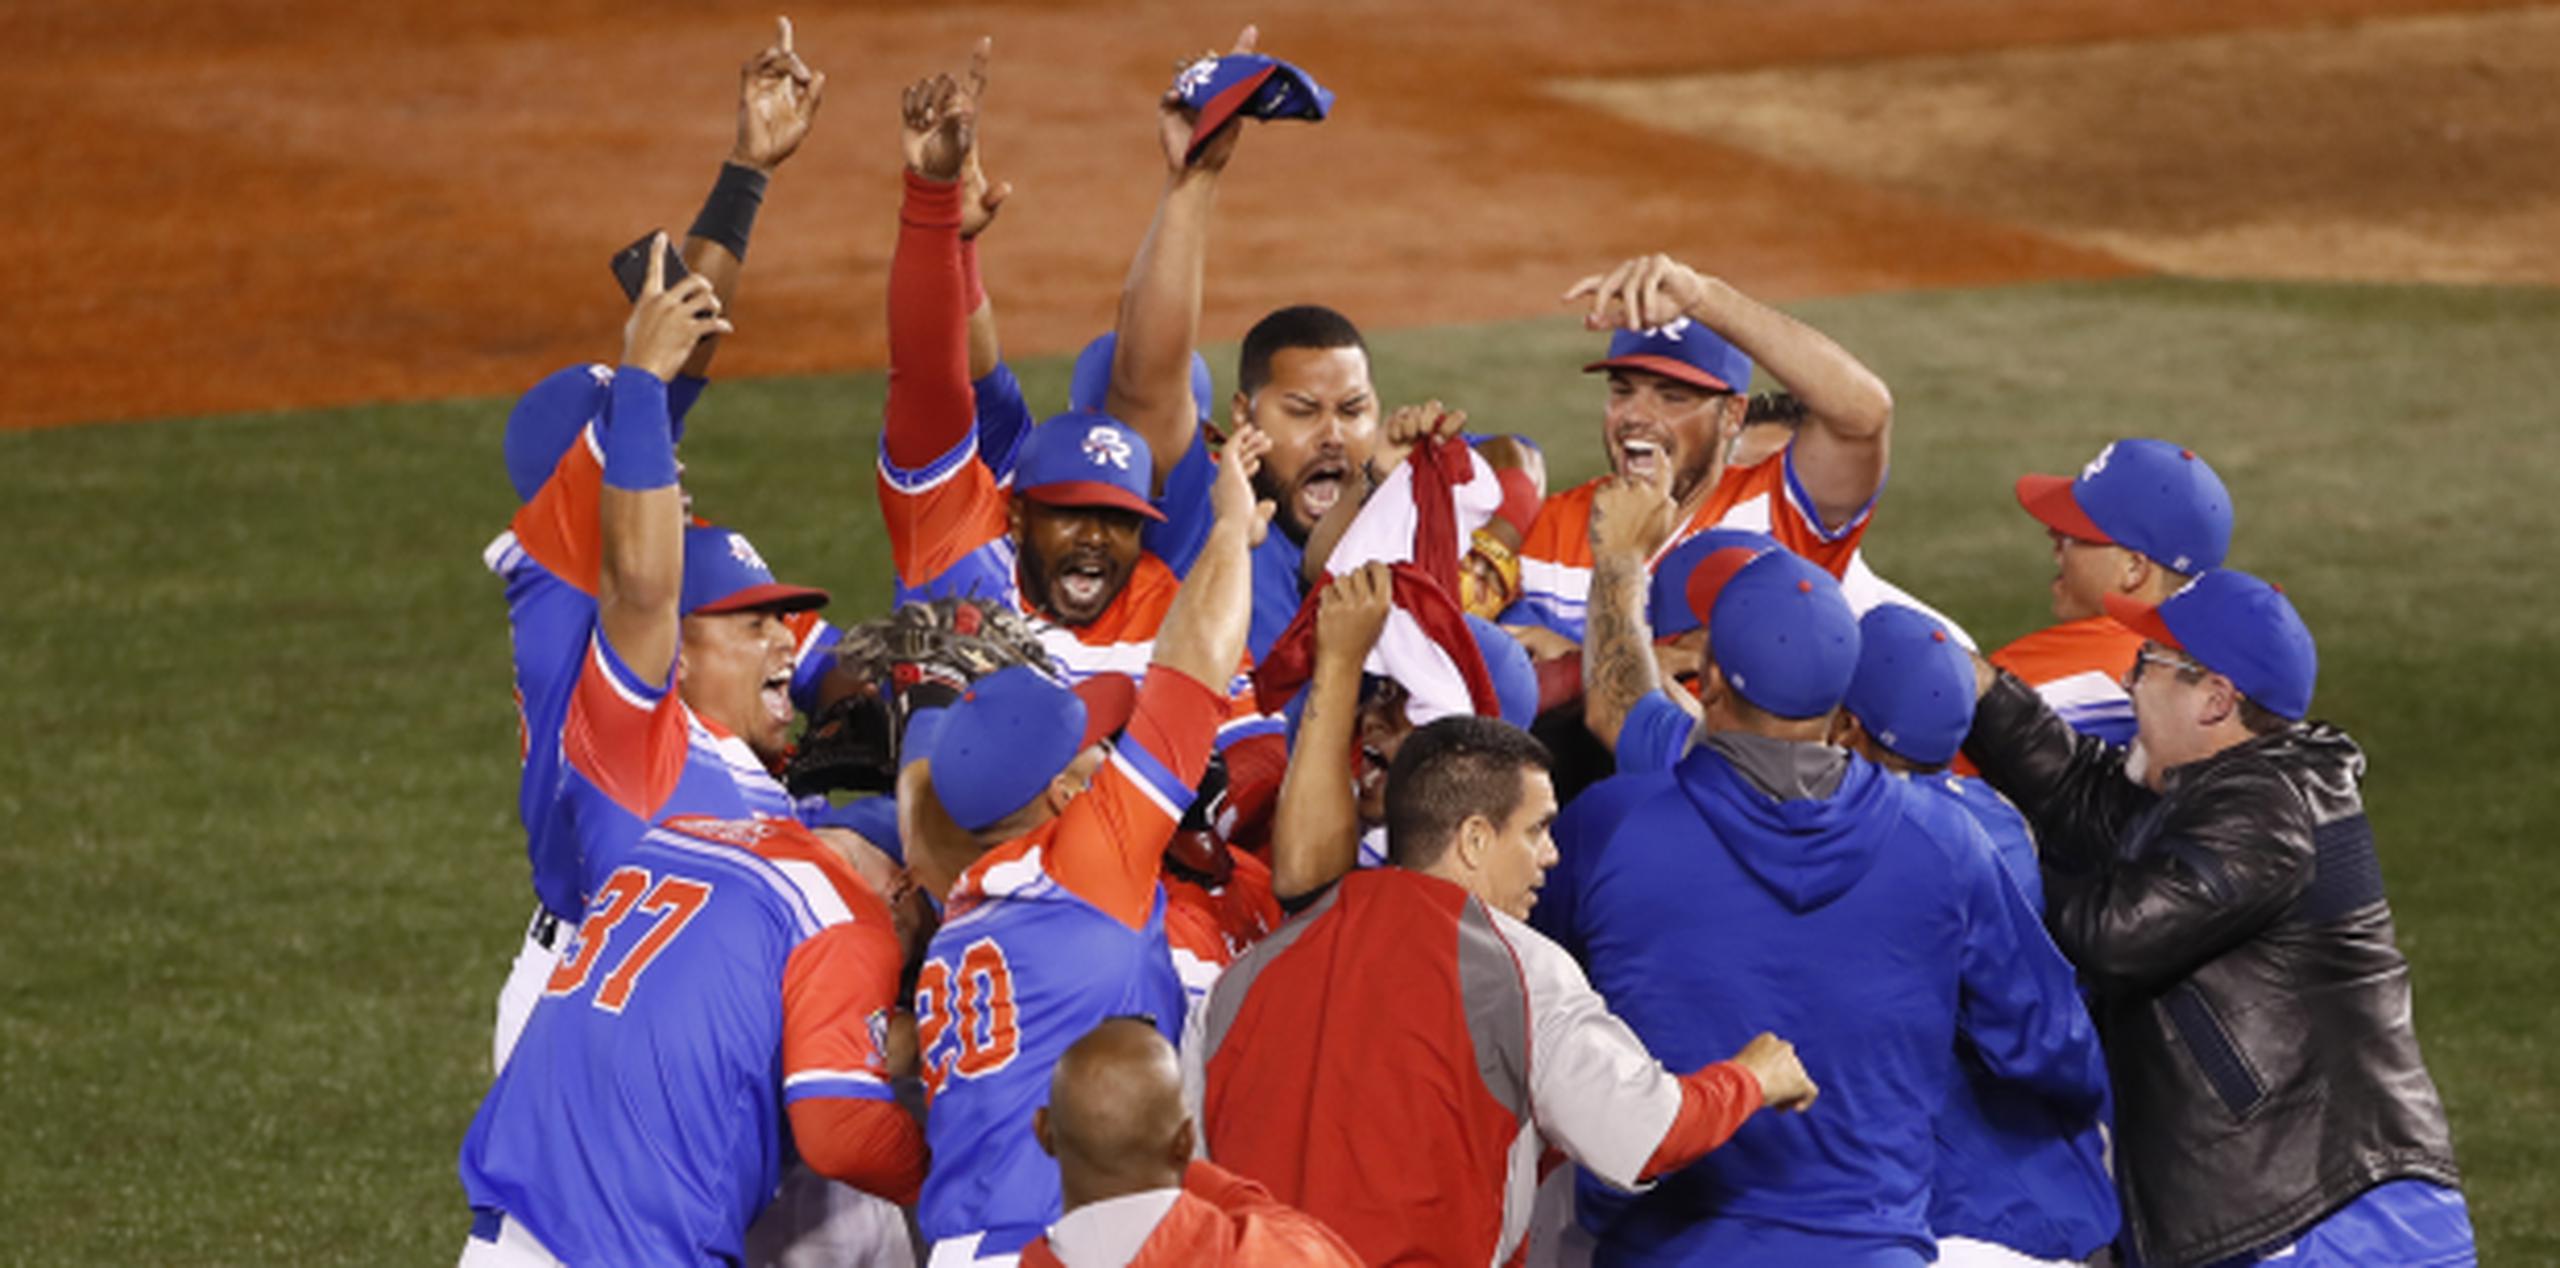 Los Criollos de Caguas y de Puerto Rico vencieron a los Águilas de la República Dominicana por 9-4 en el juego final de la Serie del Caribe. (AP)